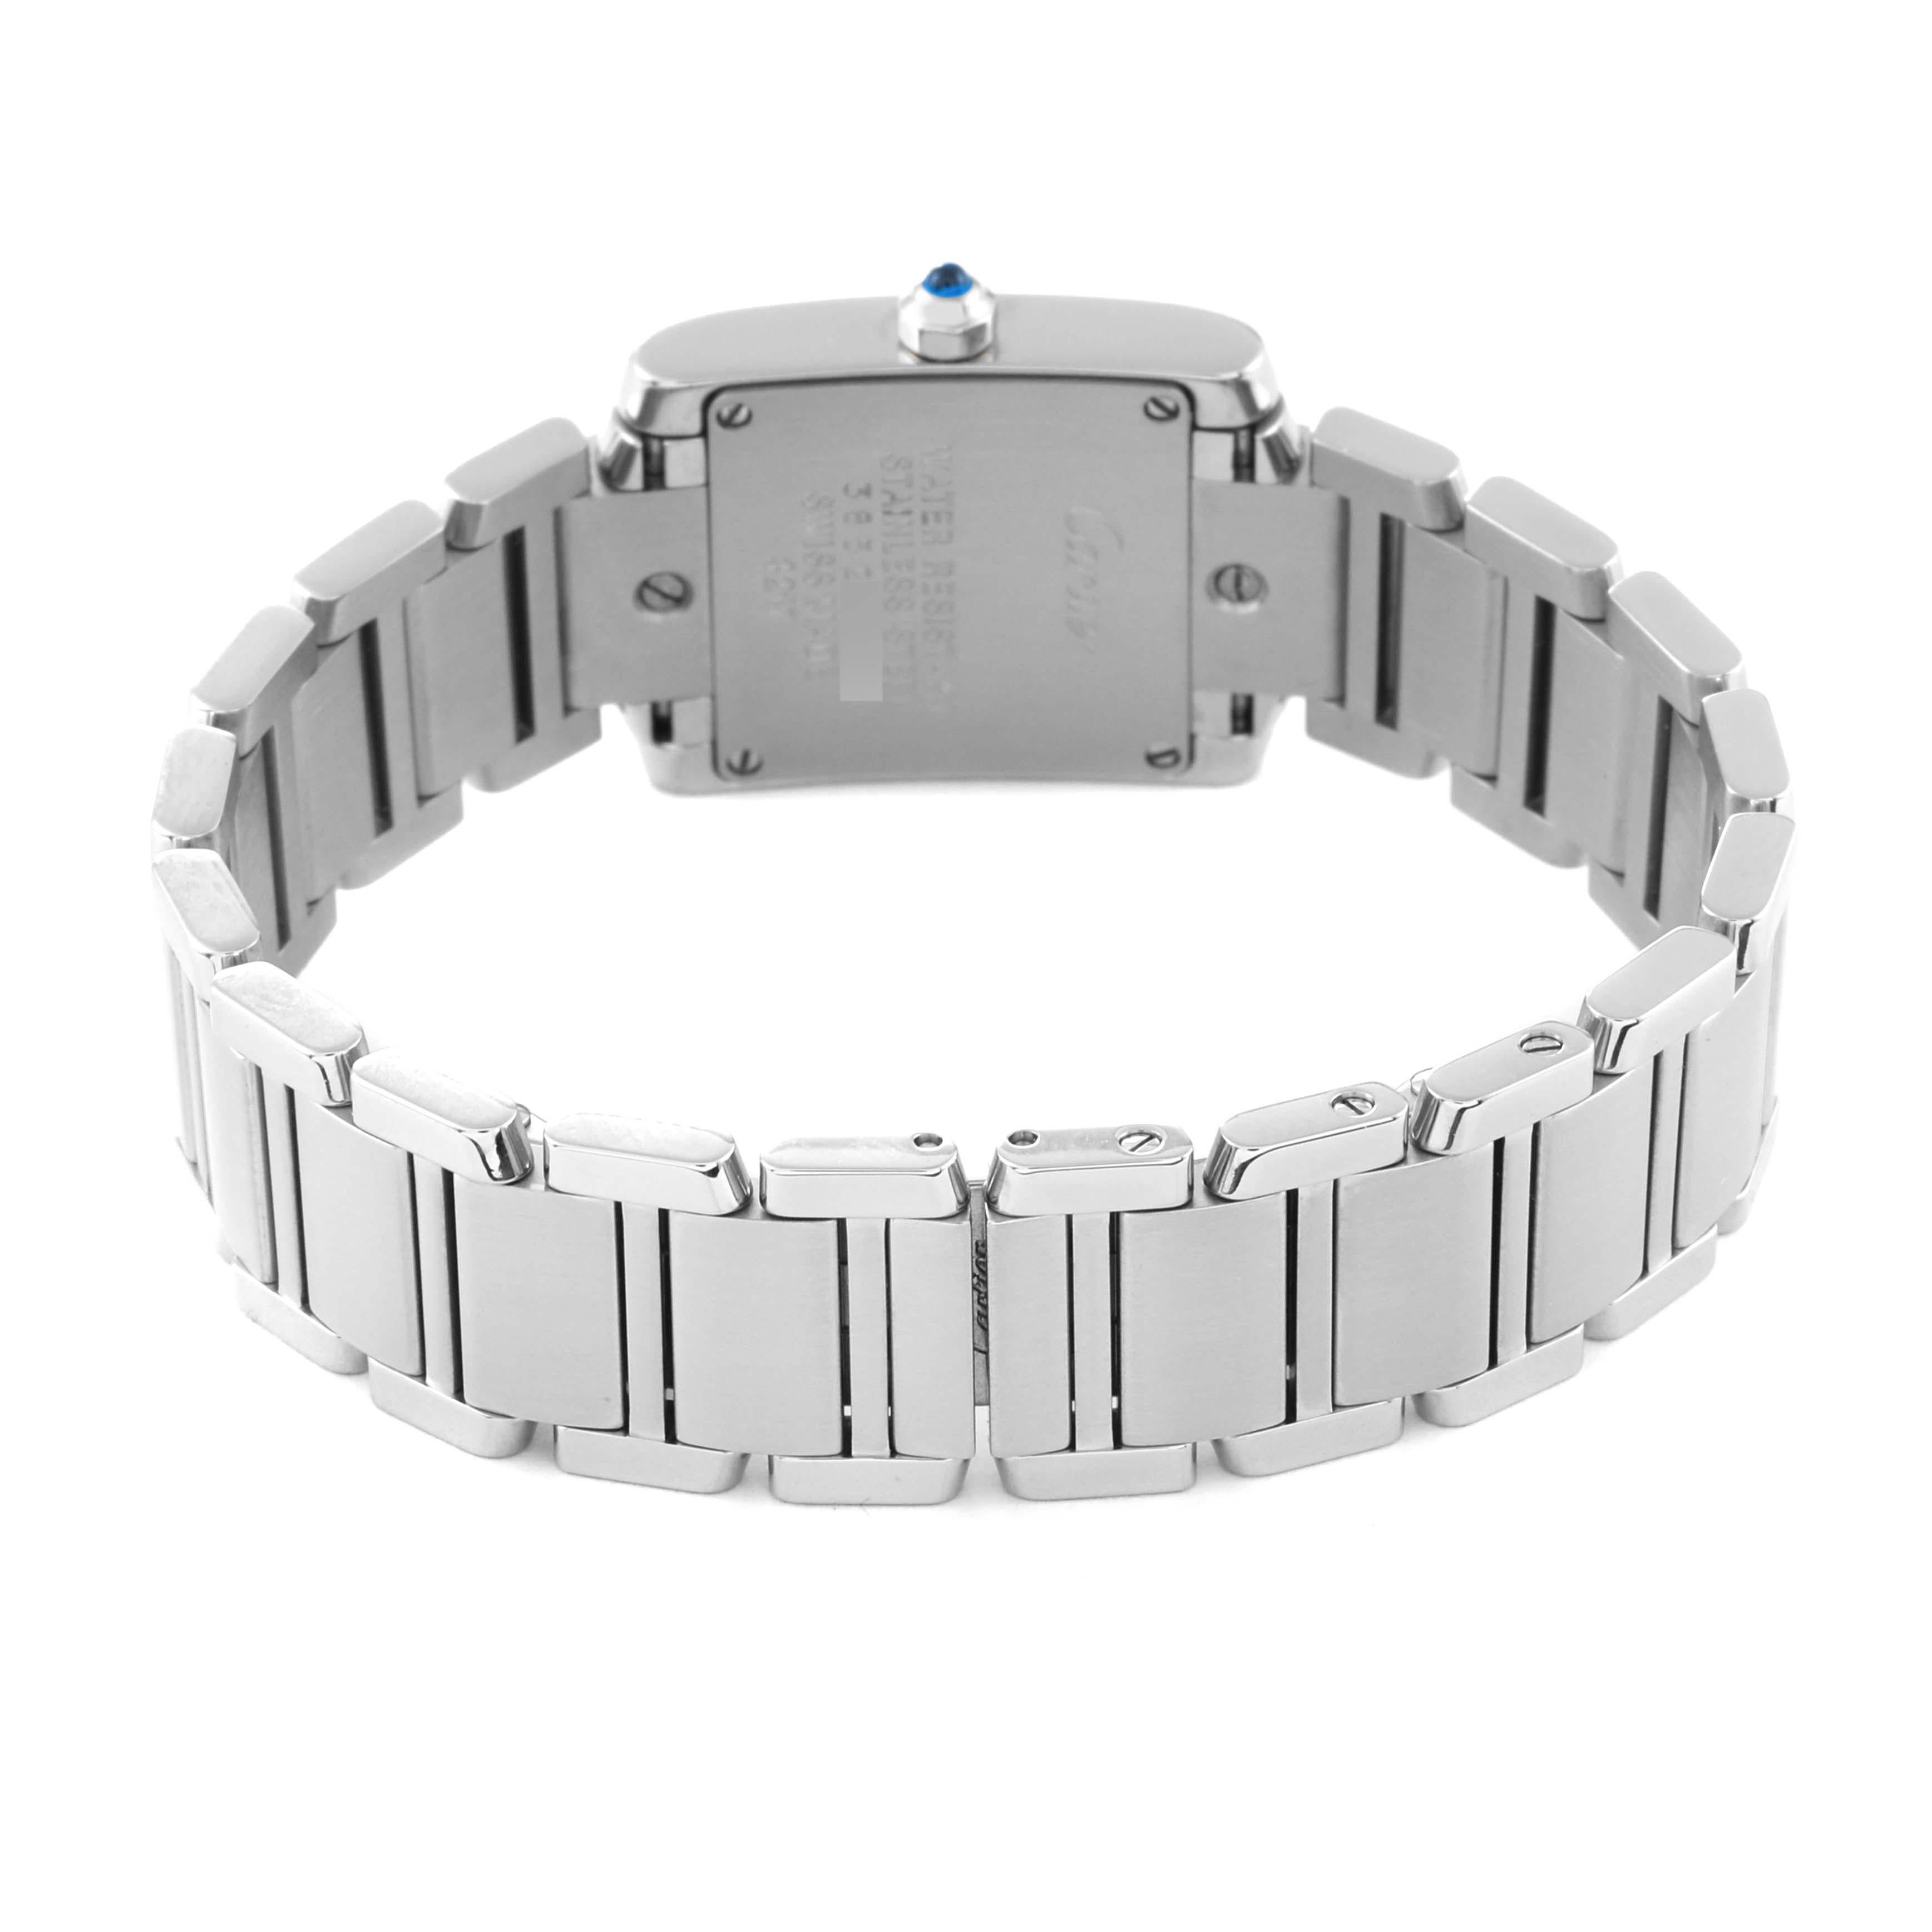 Cartier Tank Francaise Small Steel Diamond Bezel Ladies Watch W4TA0008 1